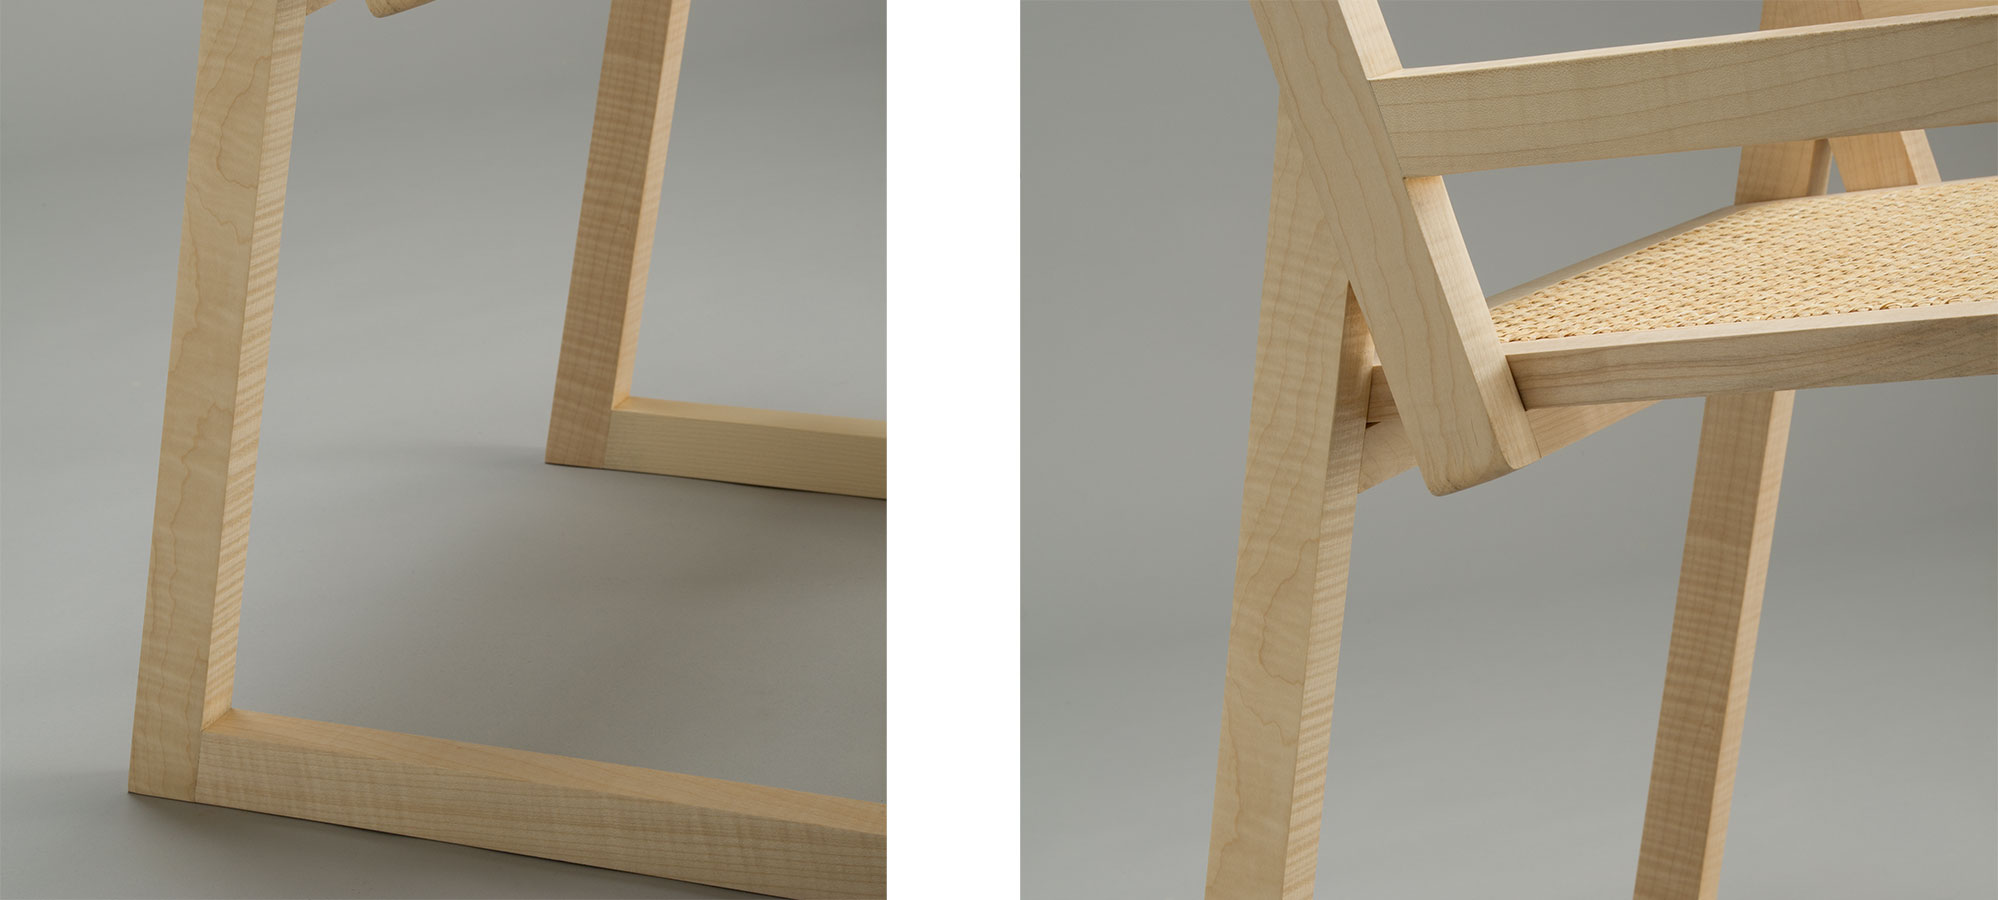 Sedia-Q design legno massello